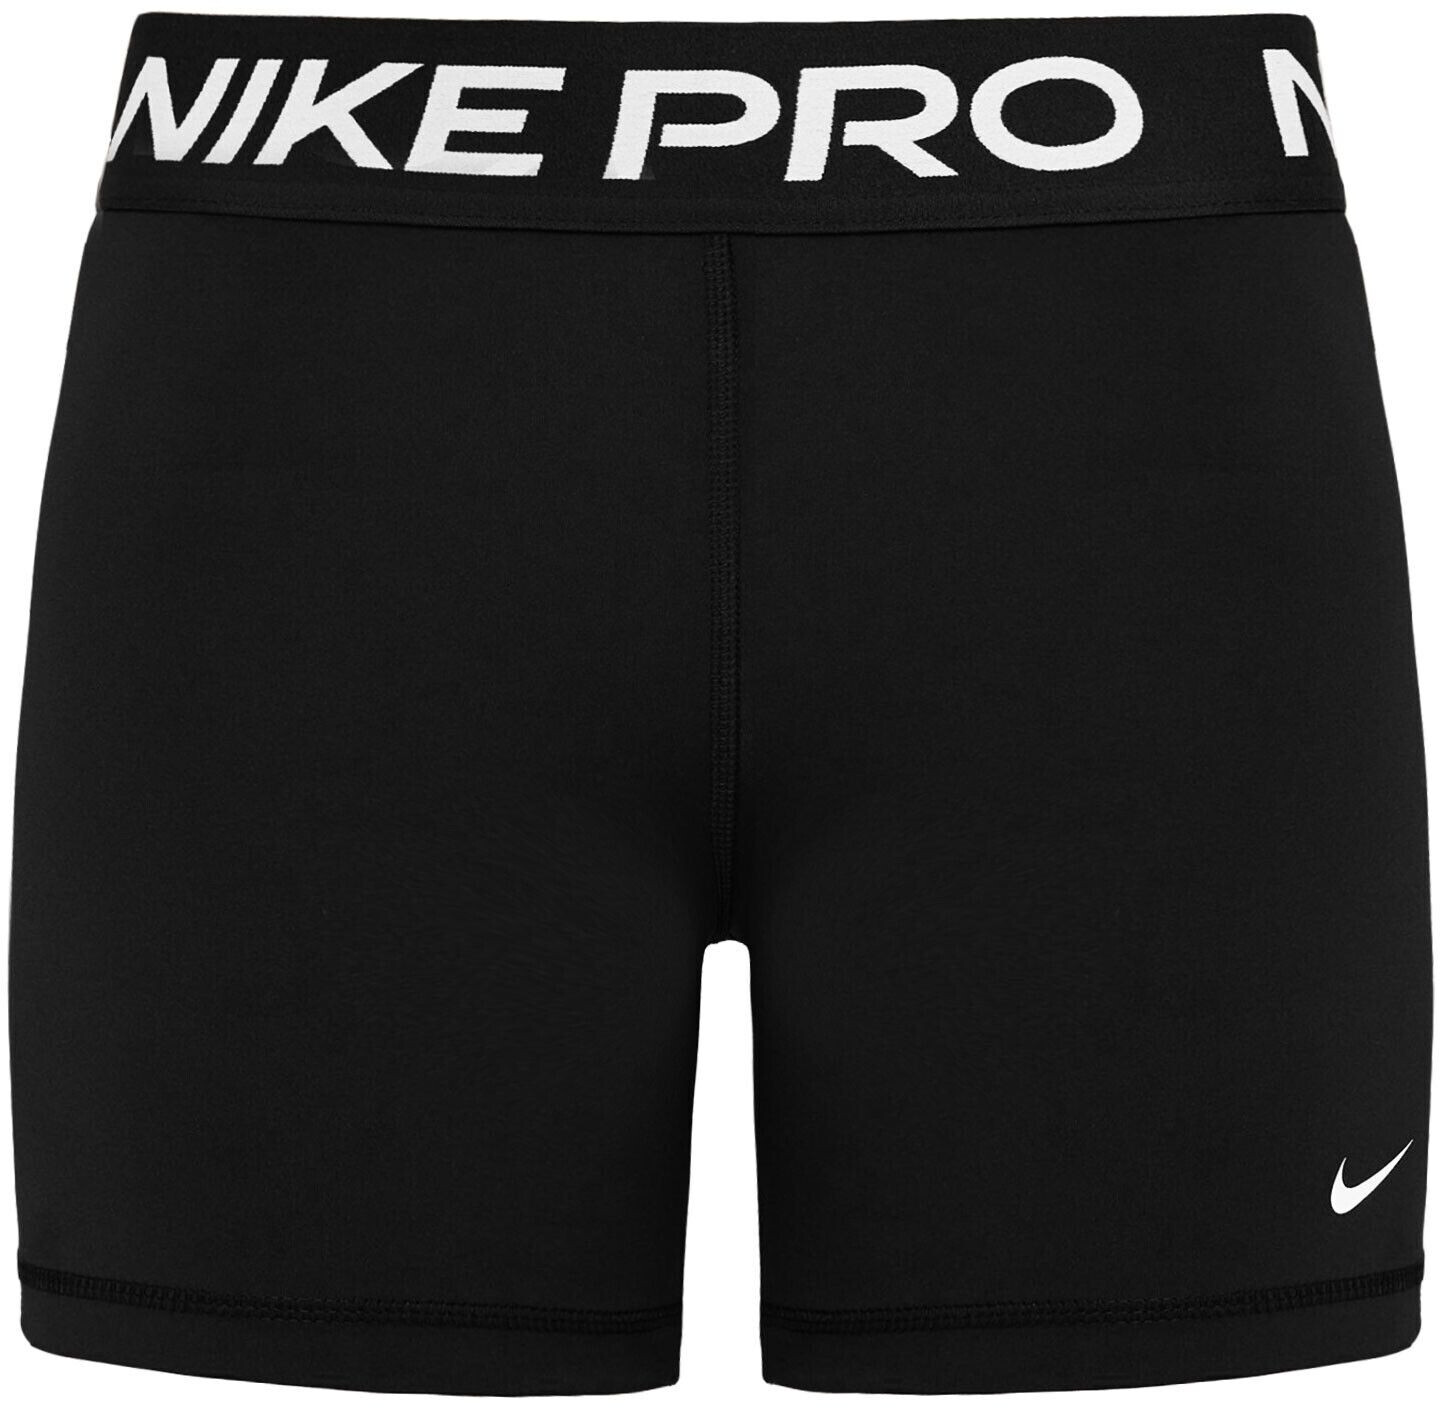 Preise) 2024 € Preisvergleich ab Pro (Februar | bei Shorts 15,00 (CZ9831) Nike 365